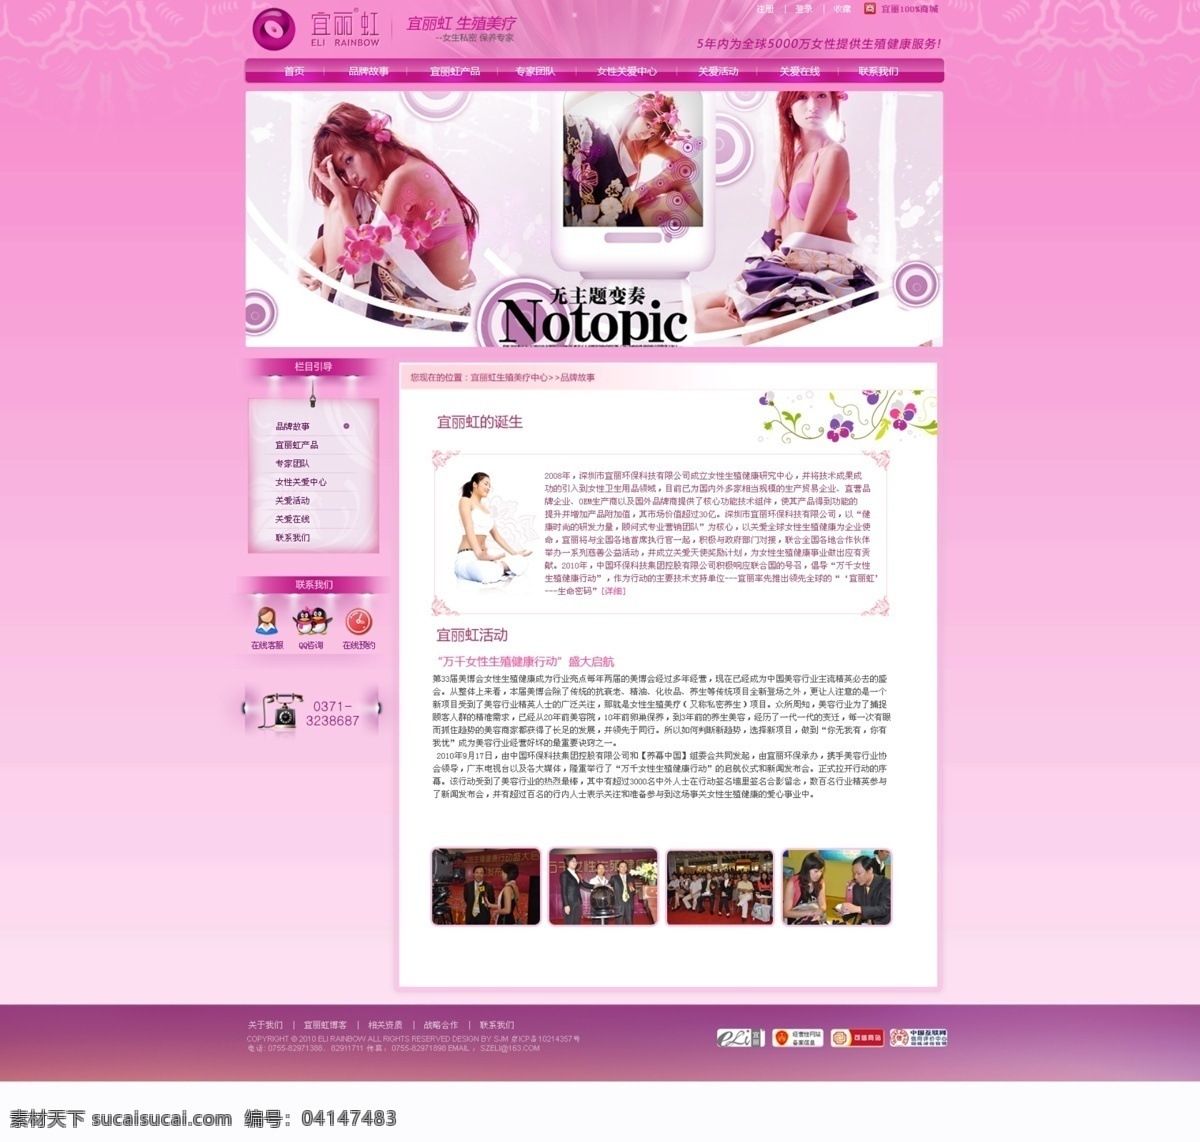 美容模板 网页模板 源文件 中文模版 生殖 整形 网页 生殖整形网页 女性 生殖器 模板 整形模板 粉色网站 行业网页模板 网页素材